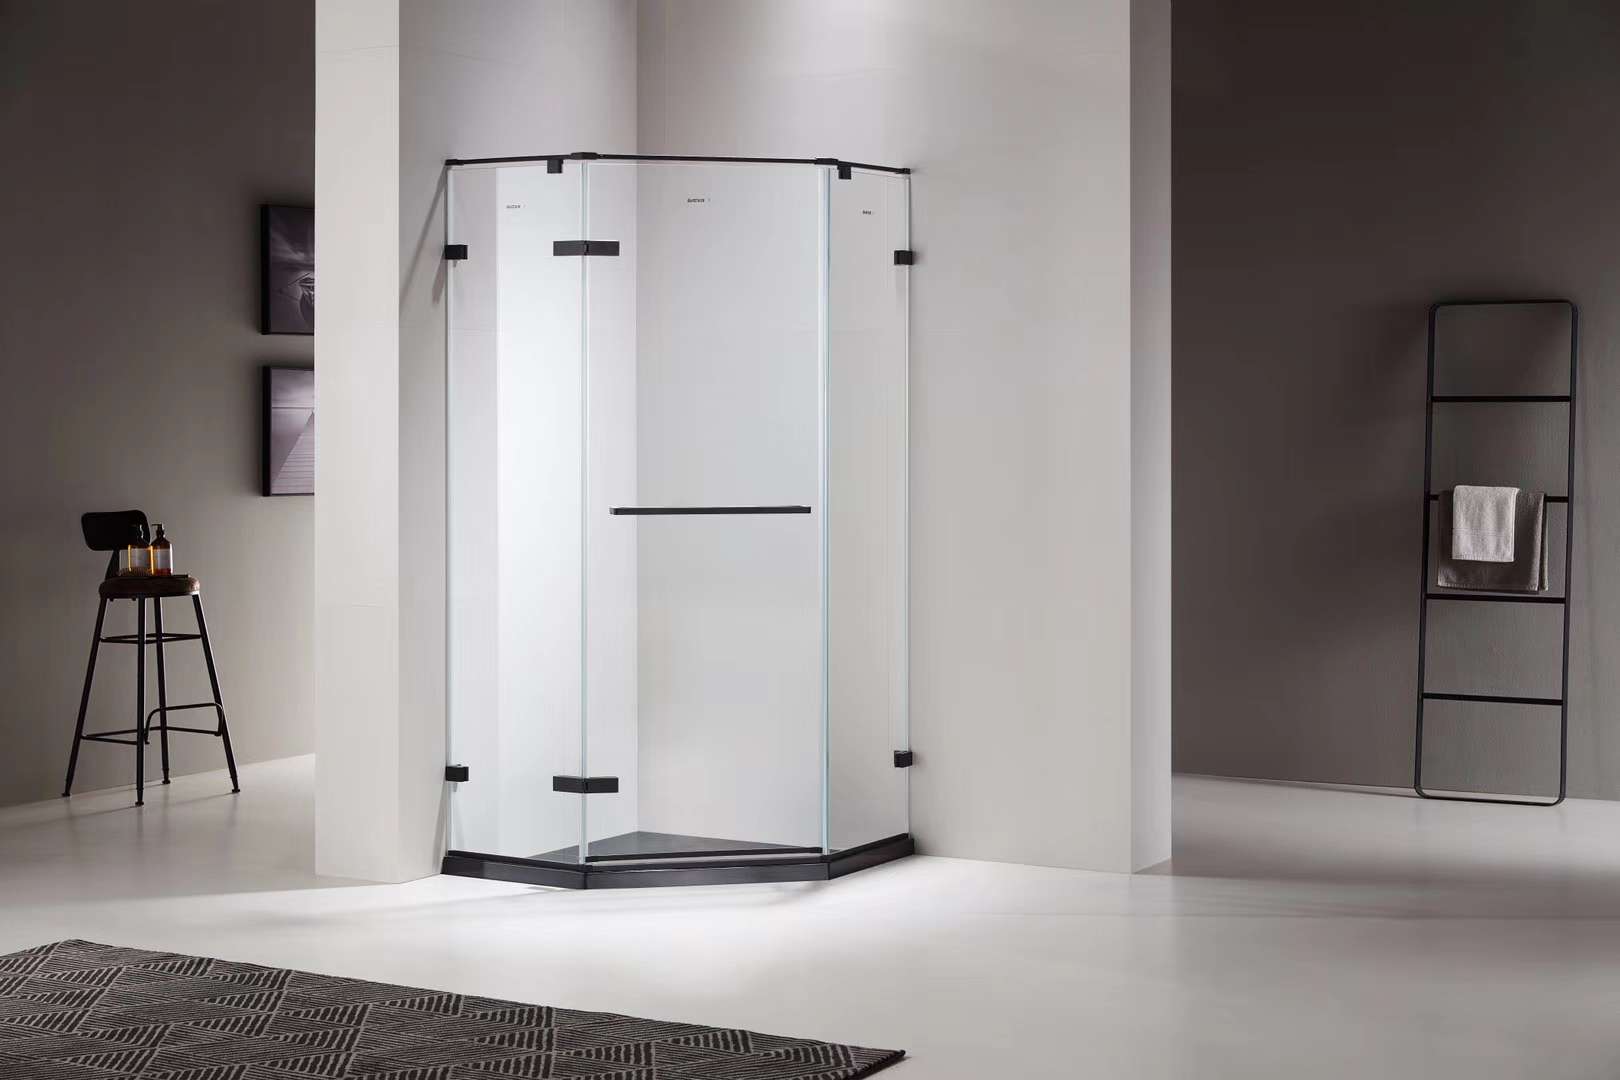 贝特超白水晶玻淋浴房06系列雅黑热销款价格实惠一体化设计